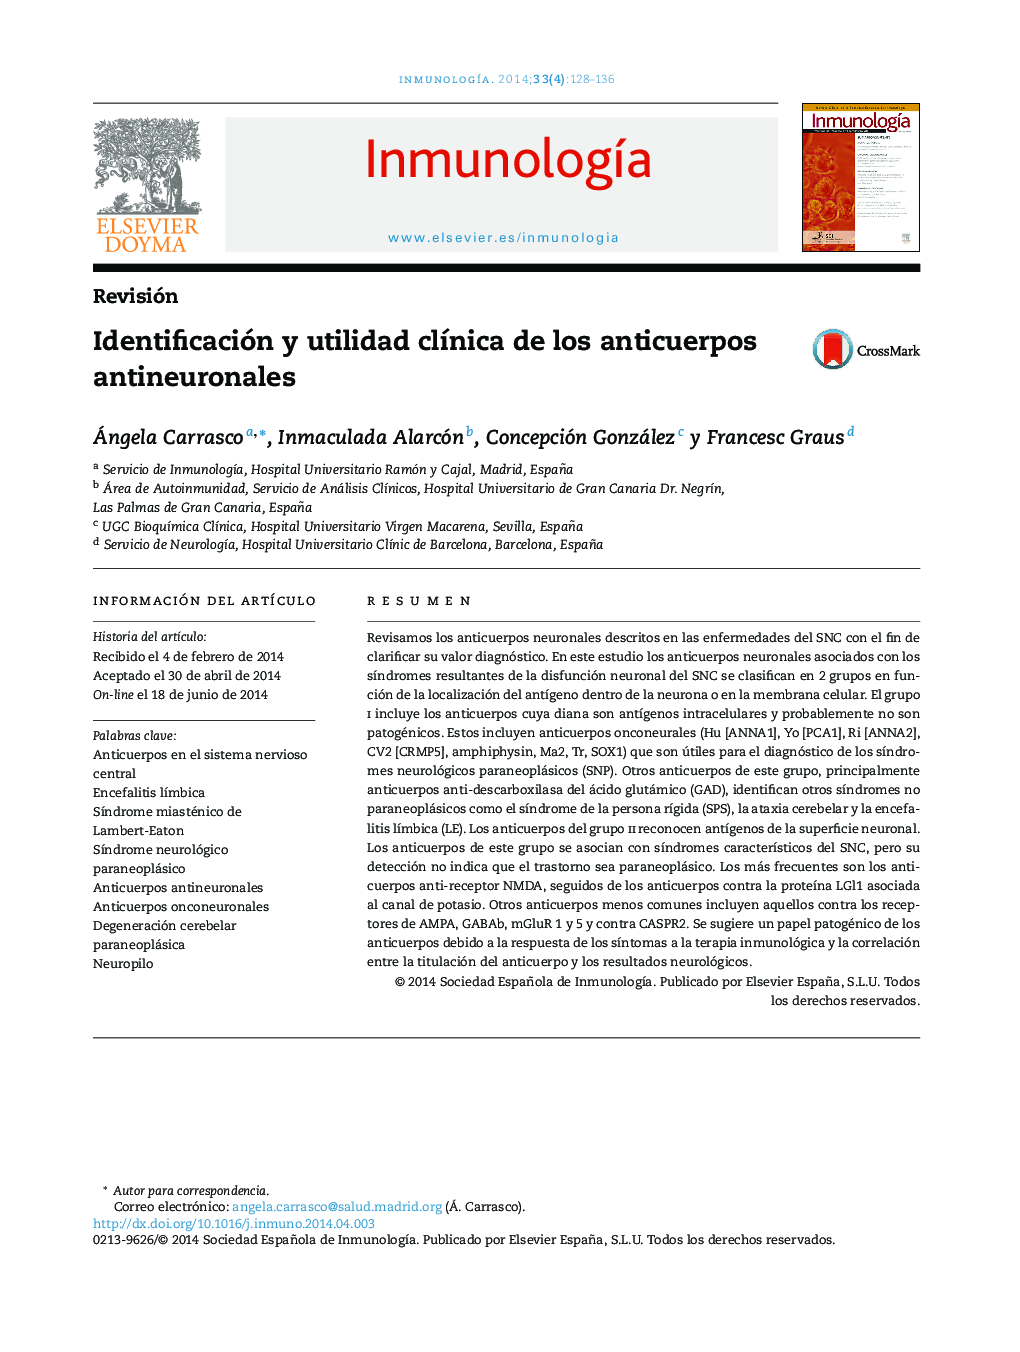 Identificación y utilidad clínica de los anticuerpos antineuronales